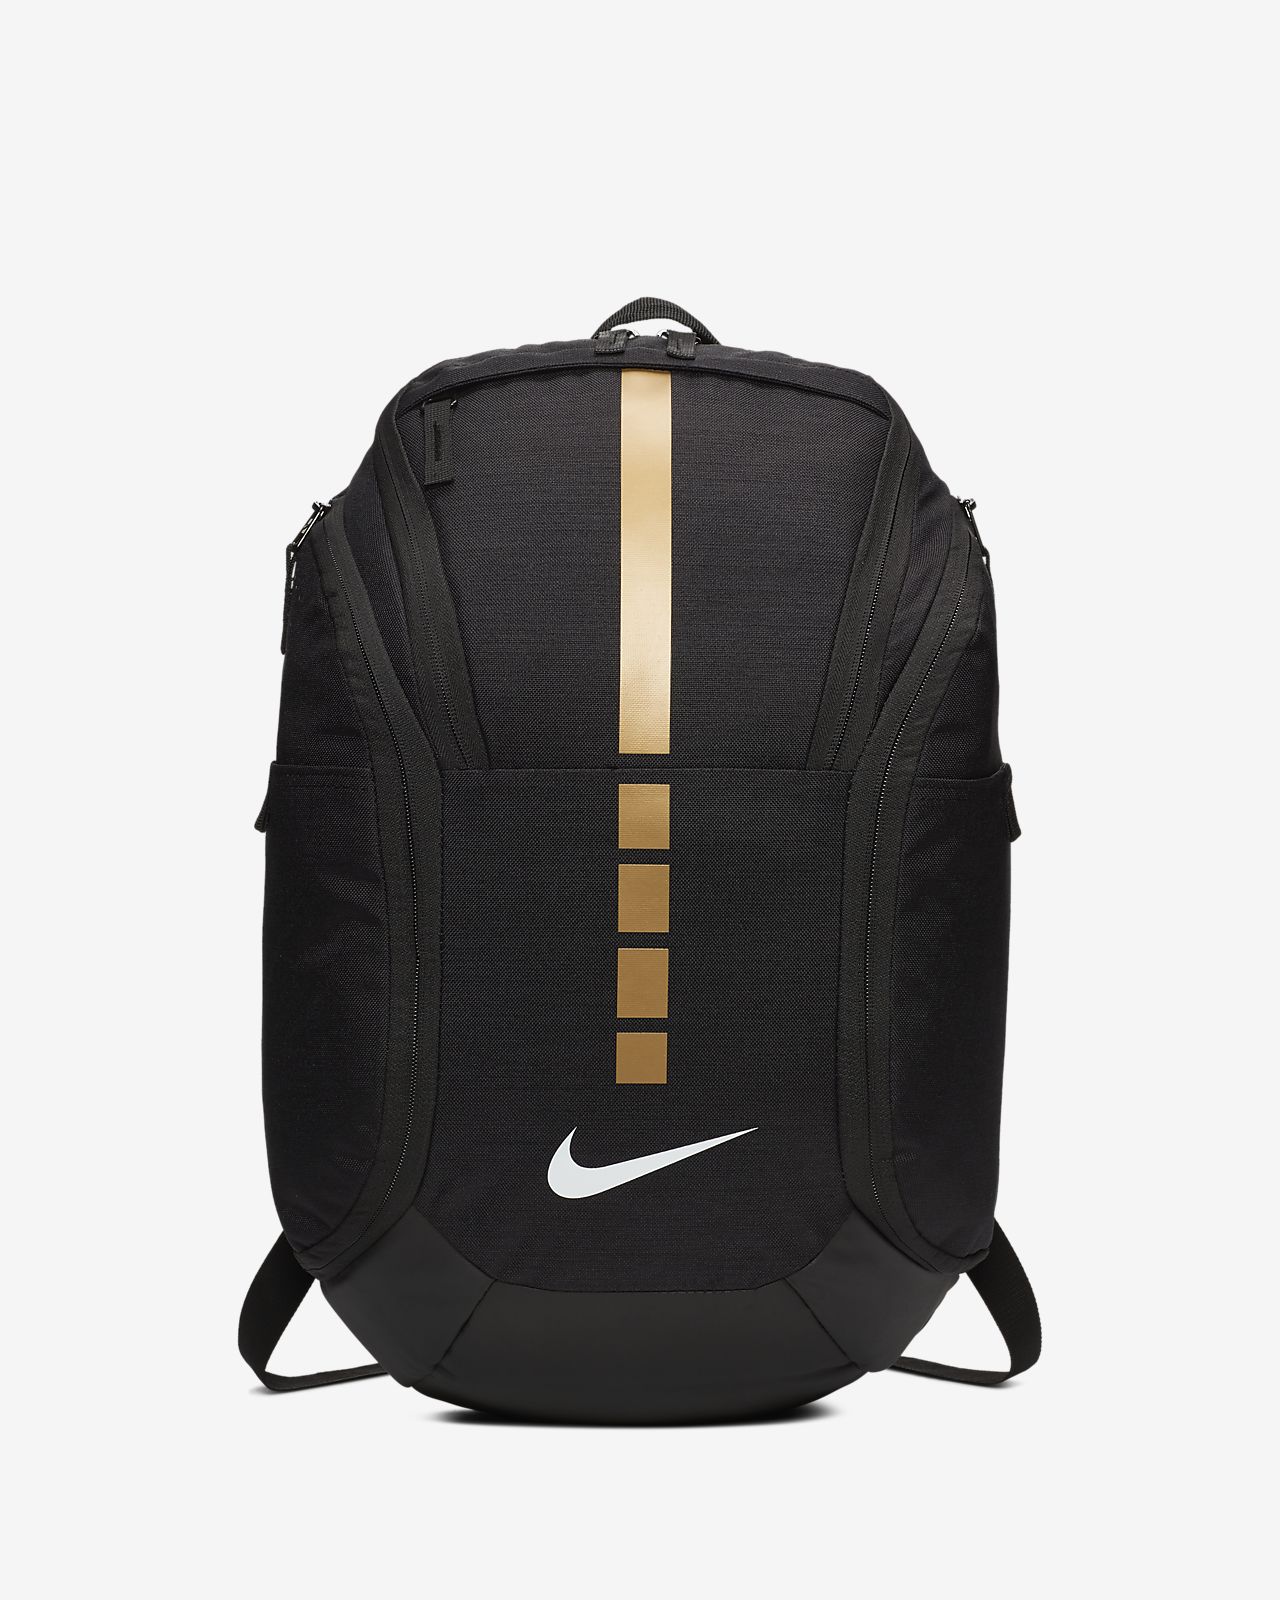 nike small backpack